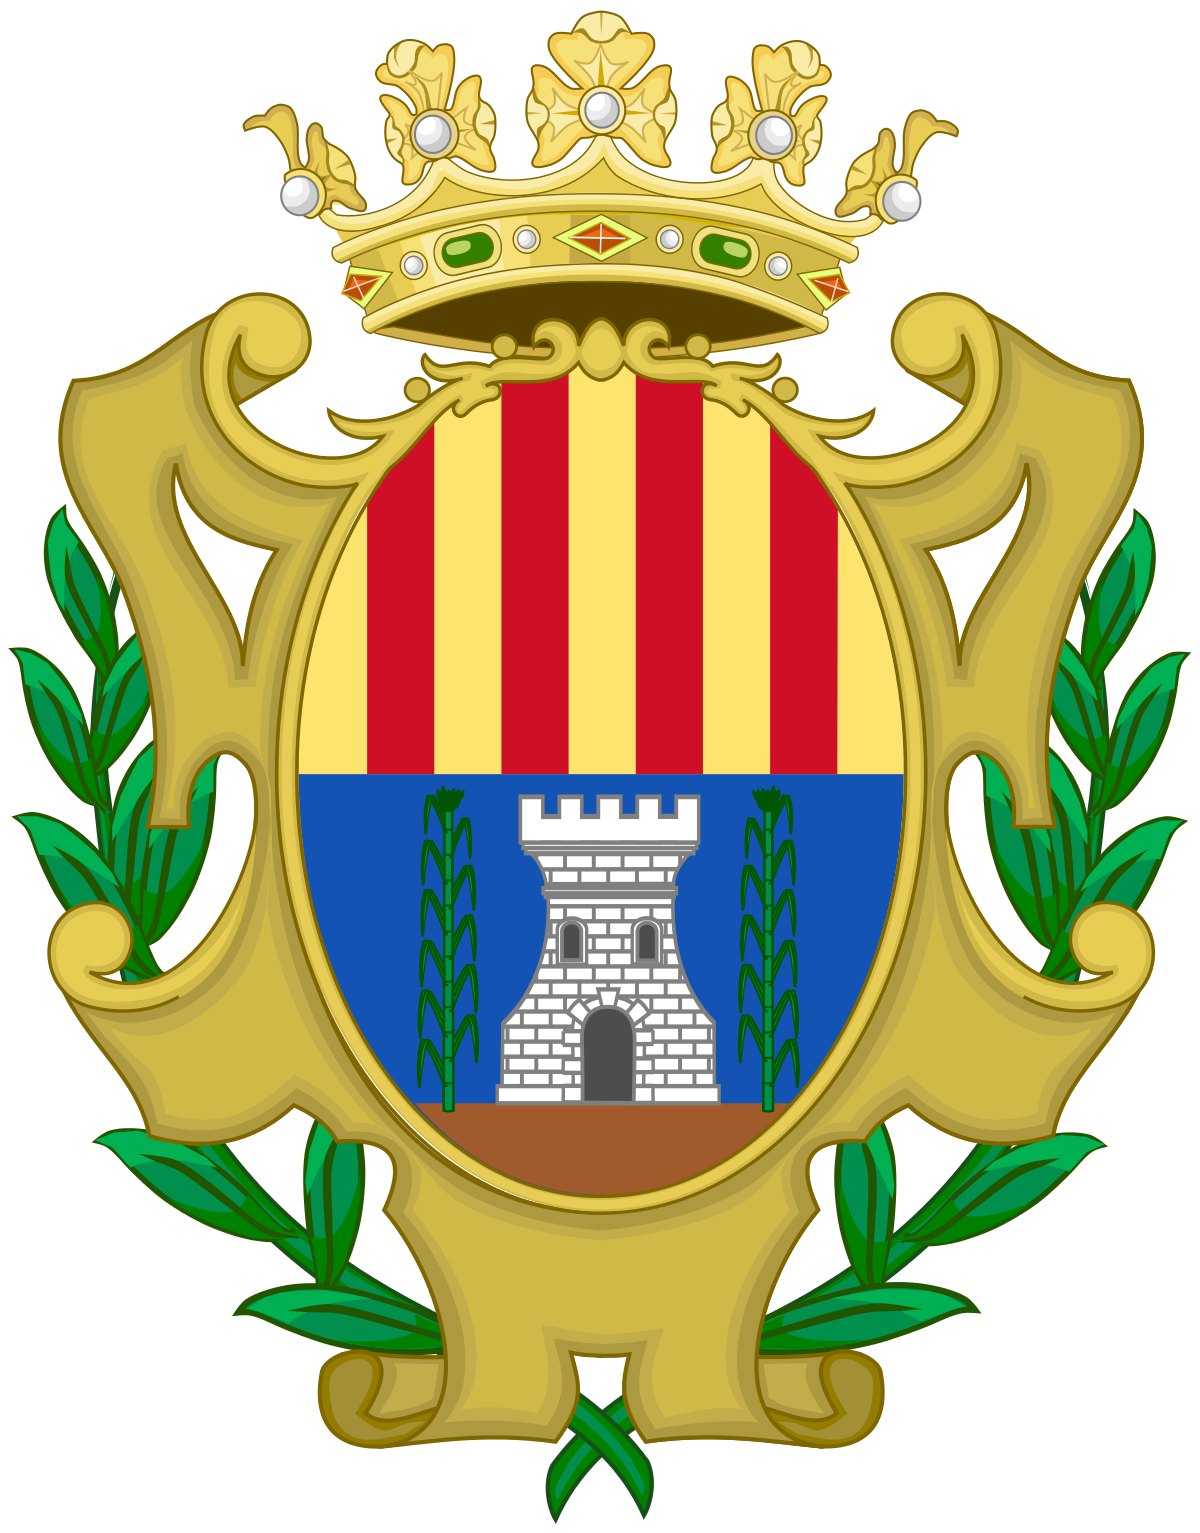 Герб корона какого города. Герб Арагона Испания. Корона на гербе Португалии. Боснийский герб с короной.